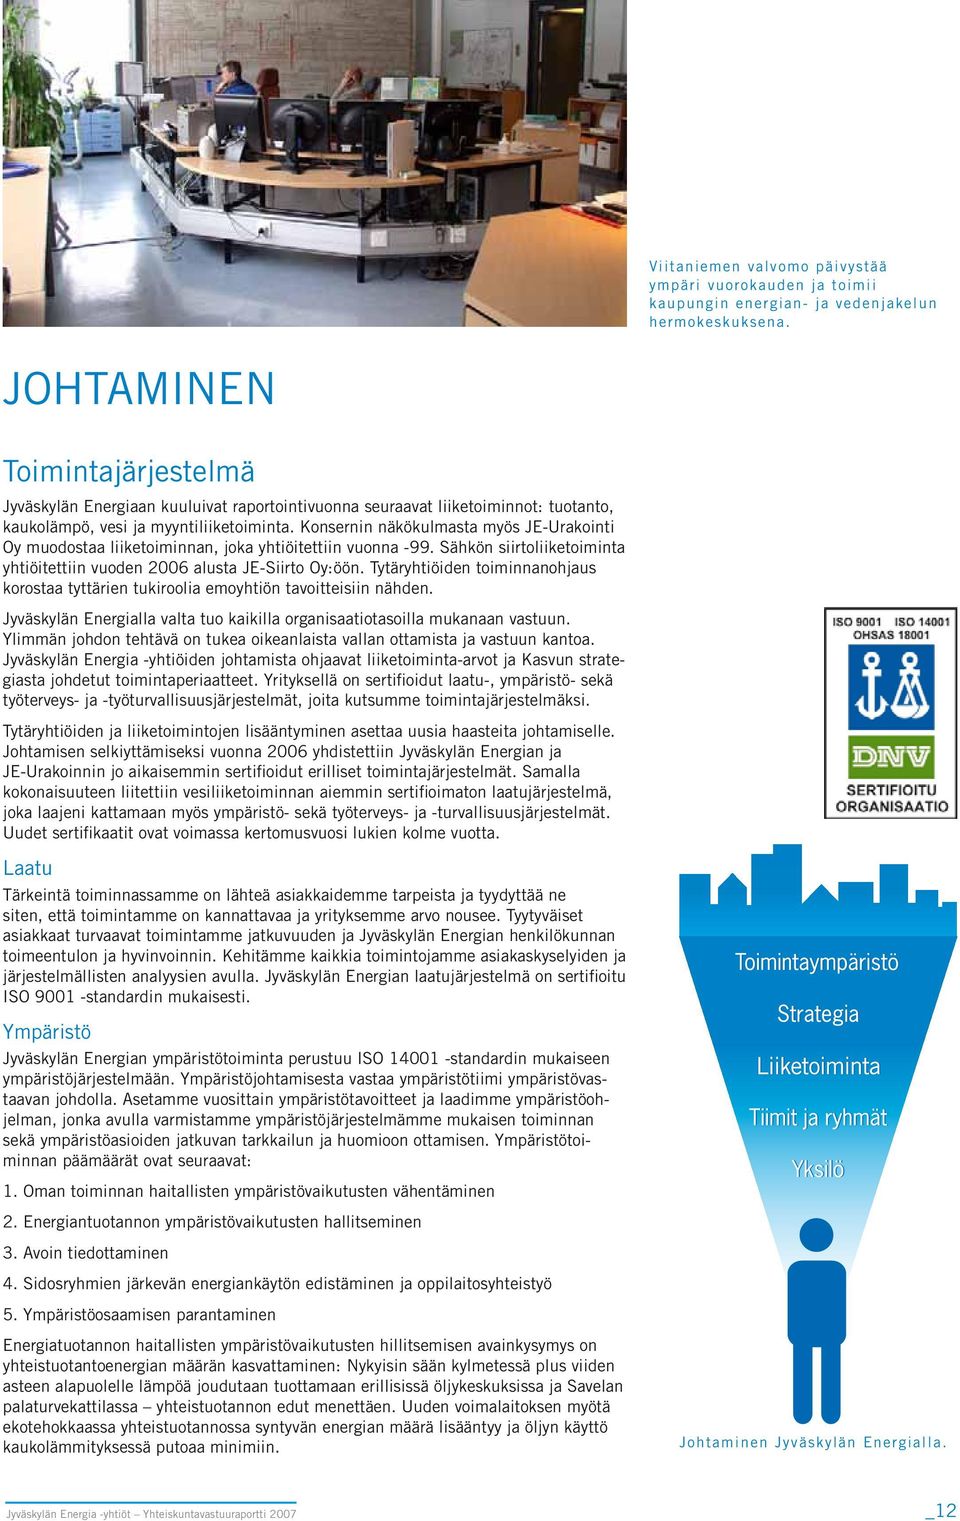 Konsernin näkökulmasta myös JE-Urakointi Oy muodostaa liiketoiminnan, joka yhtiöitettiin vuonna -99. Sähkön siirtoliiketoiminta yhtiöitettiin vuoden 2006 alusta JE-Siirto Oy: öön.